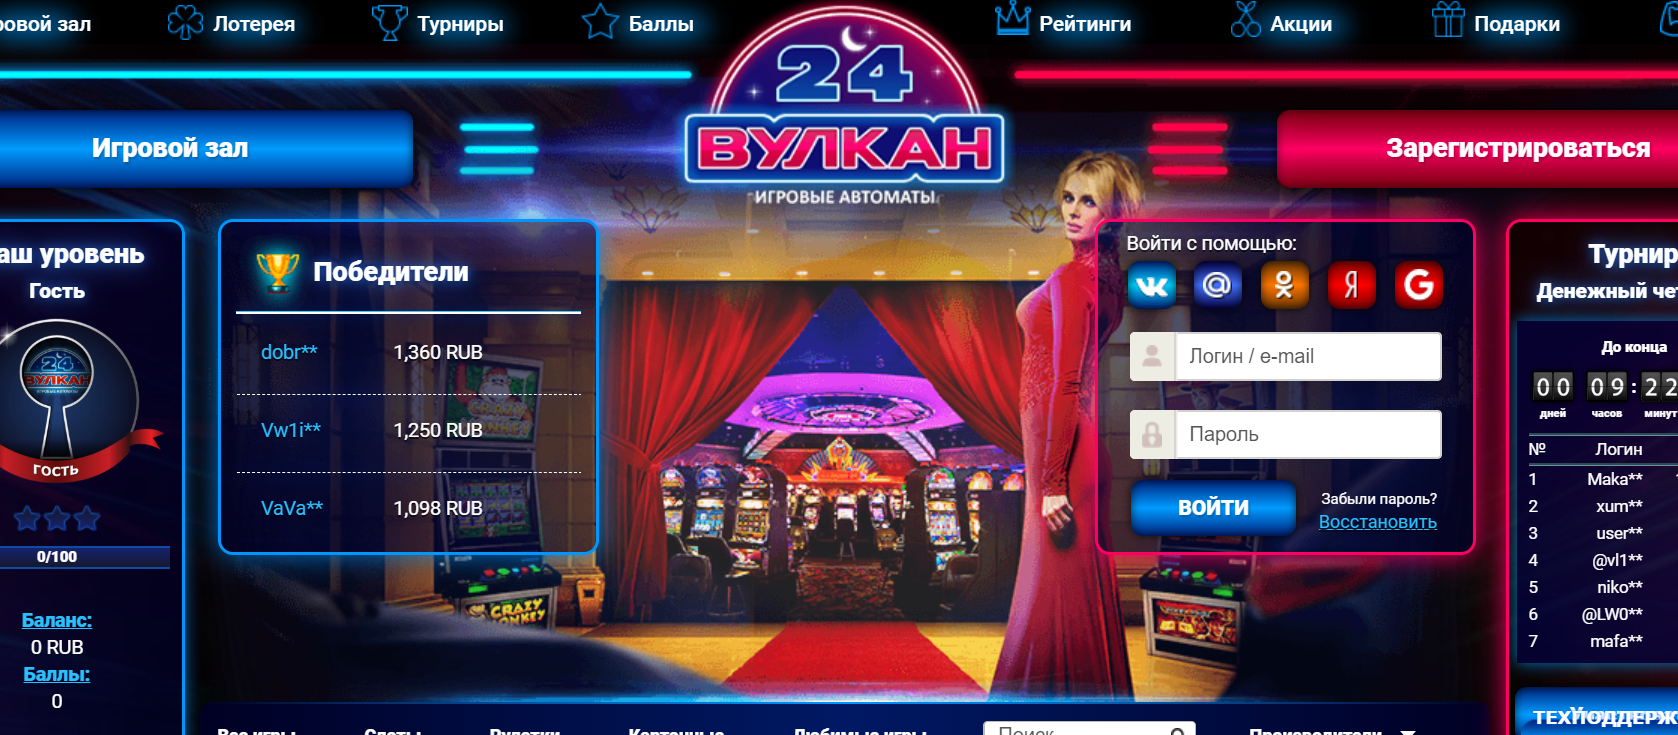 Расширение возможностей игровых автоматов в казино Вулкан 24